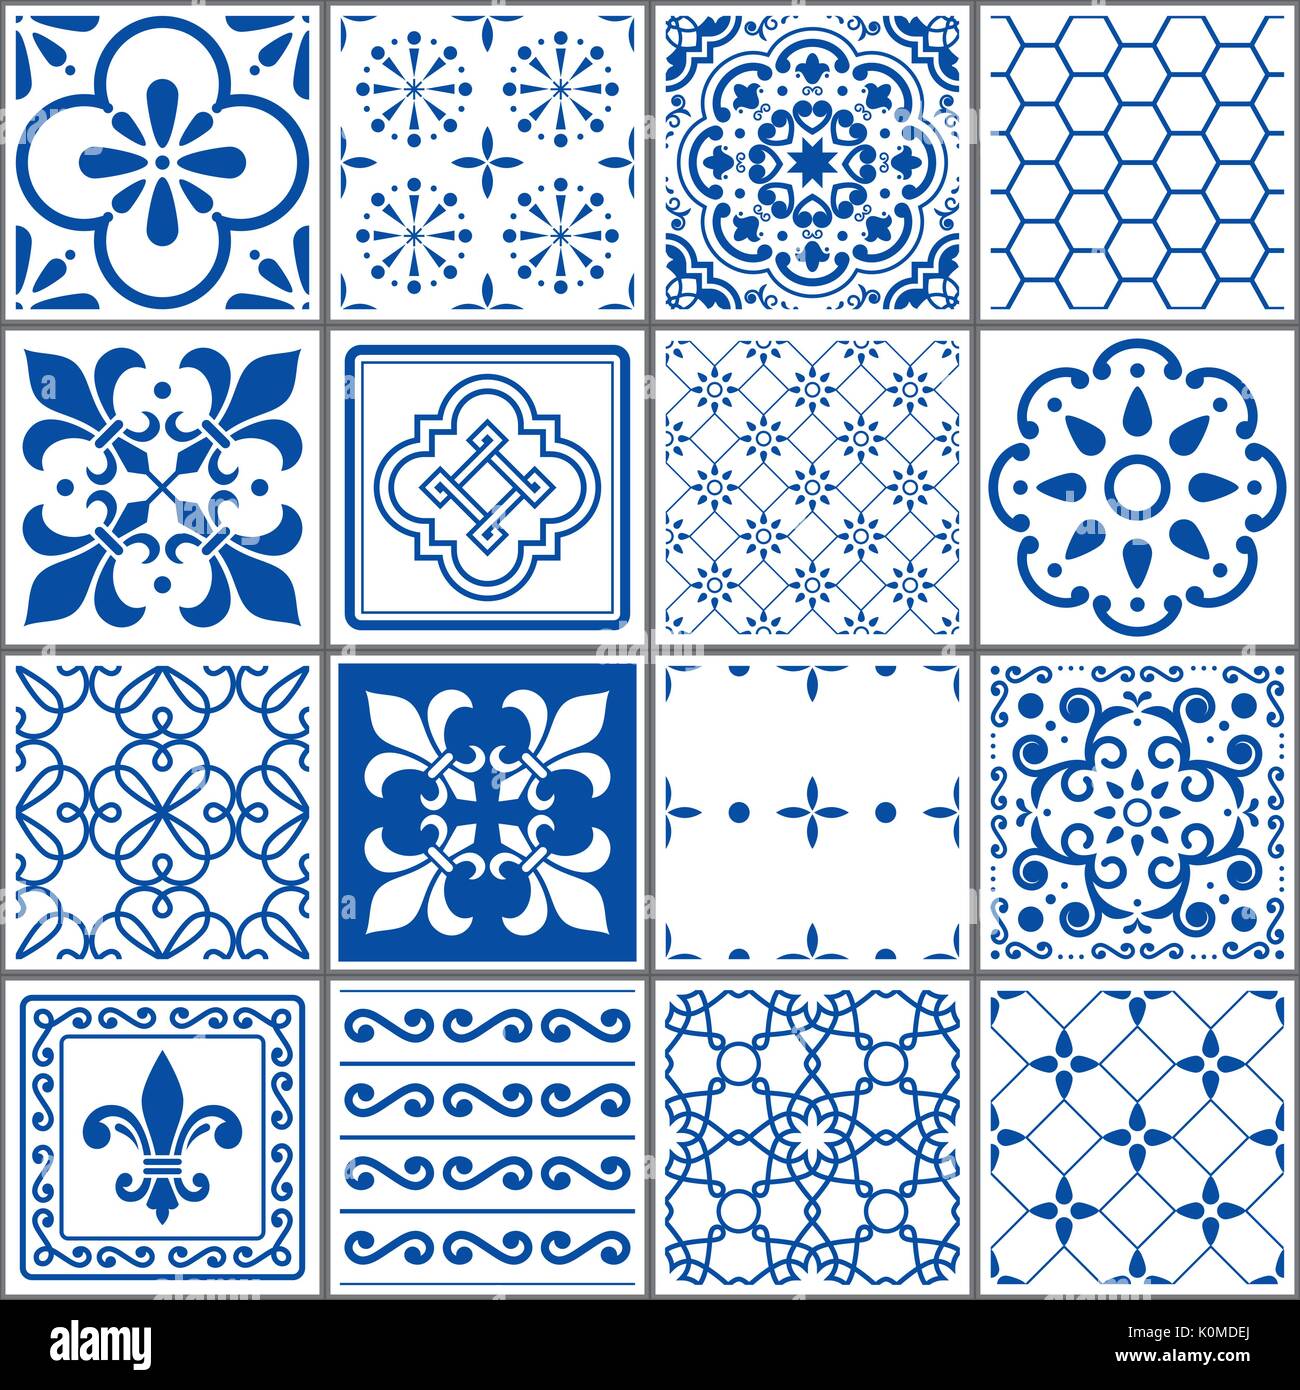 Motif carreaux portugais, Lisbonne, carreaux bleu indigo transparent vintage design céramique géométrique Azulejos Illustration de Vecteur